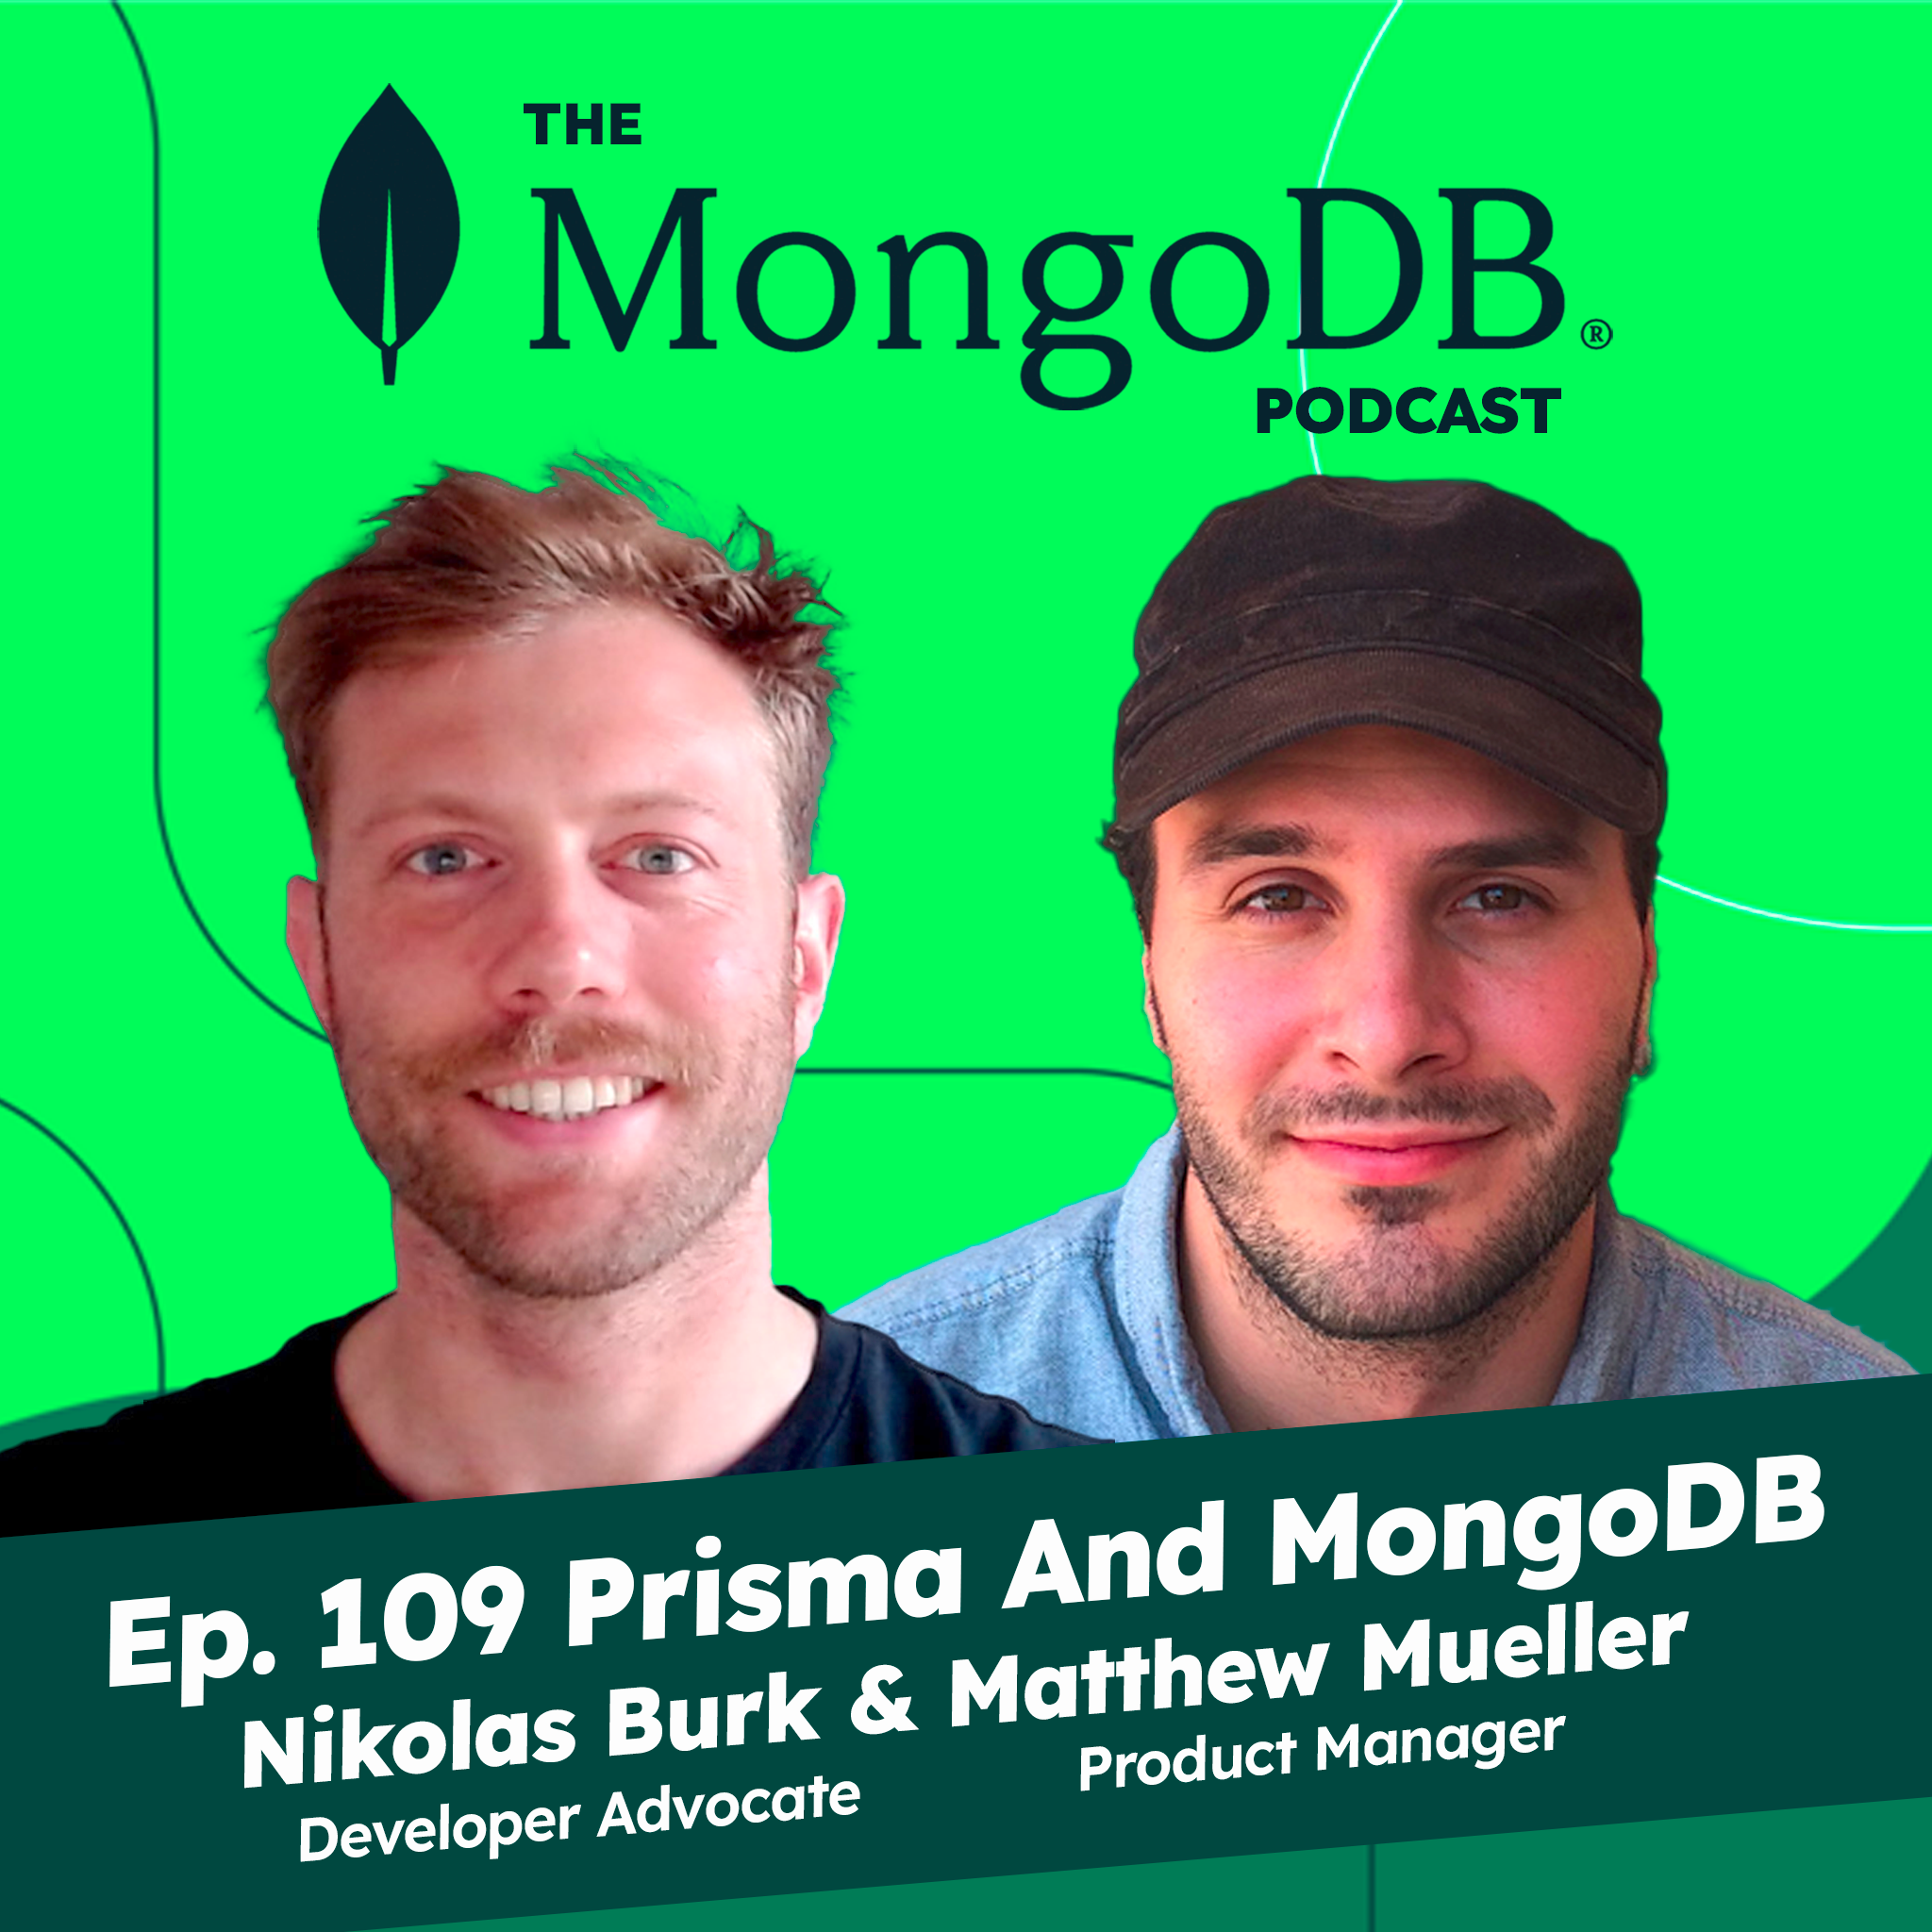 Ep. 109 Prisma and MongoDB - Better Together